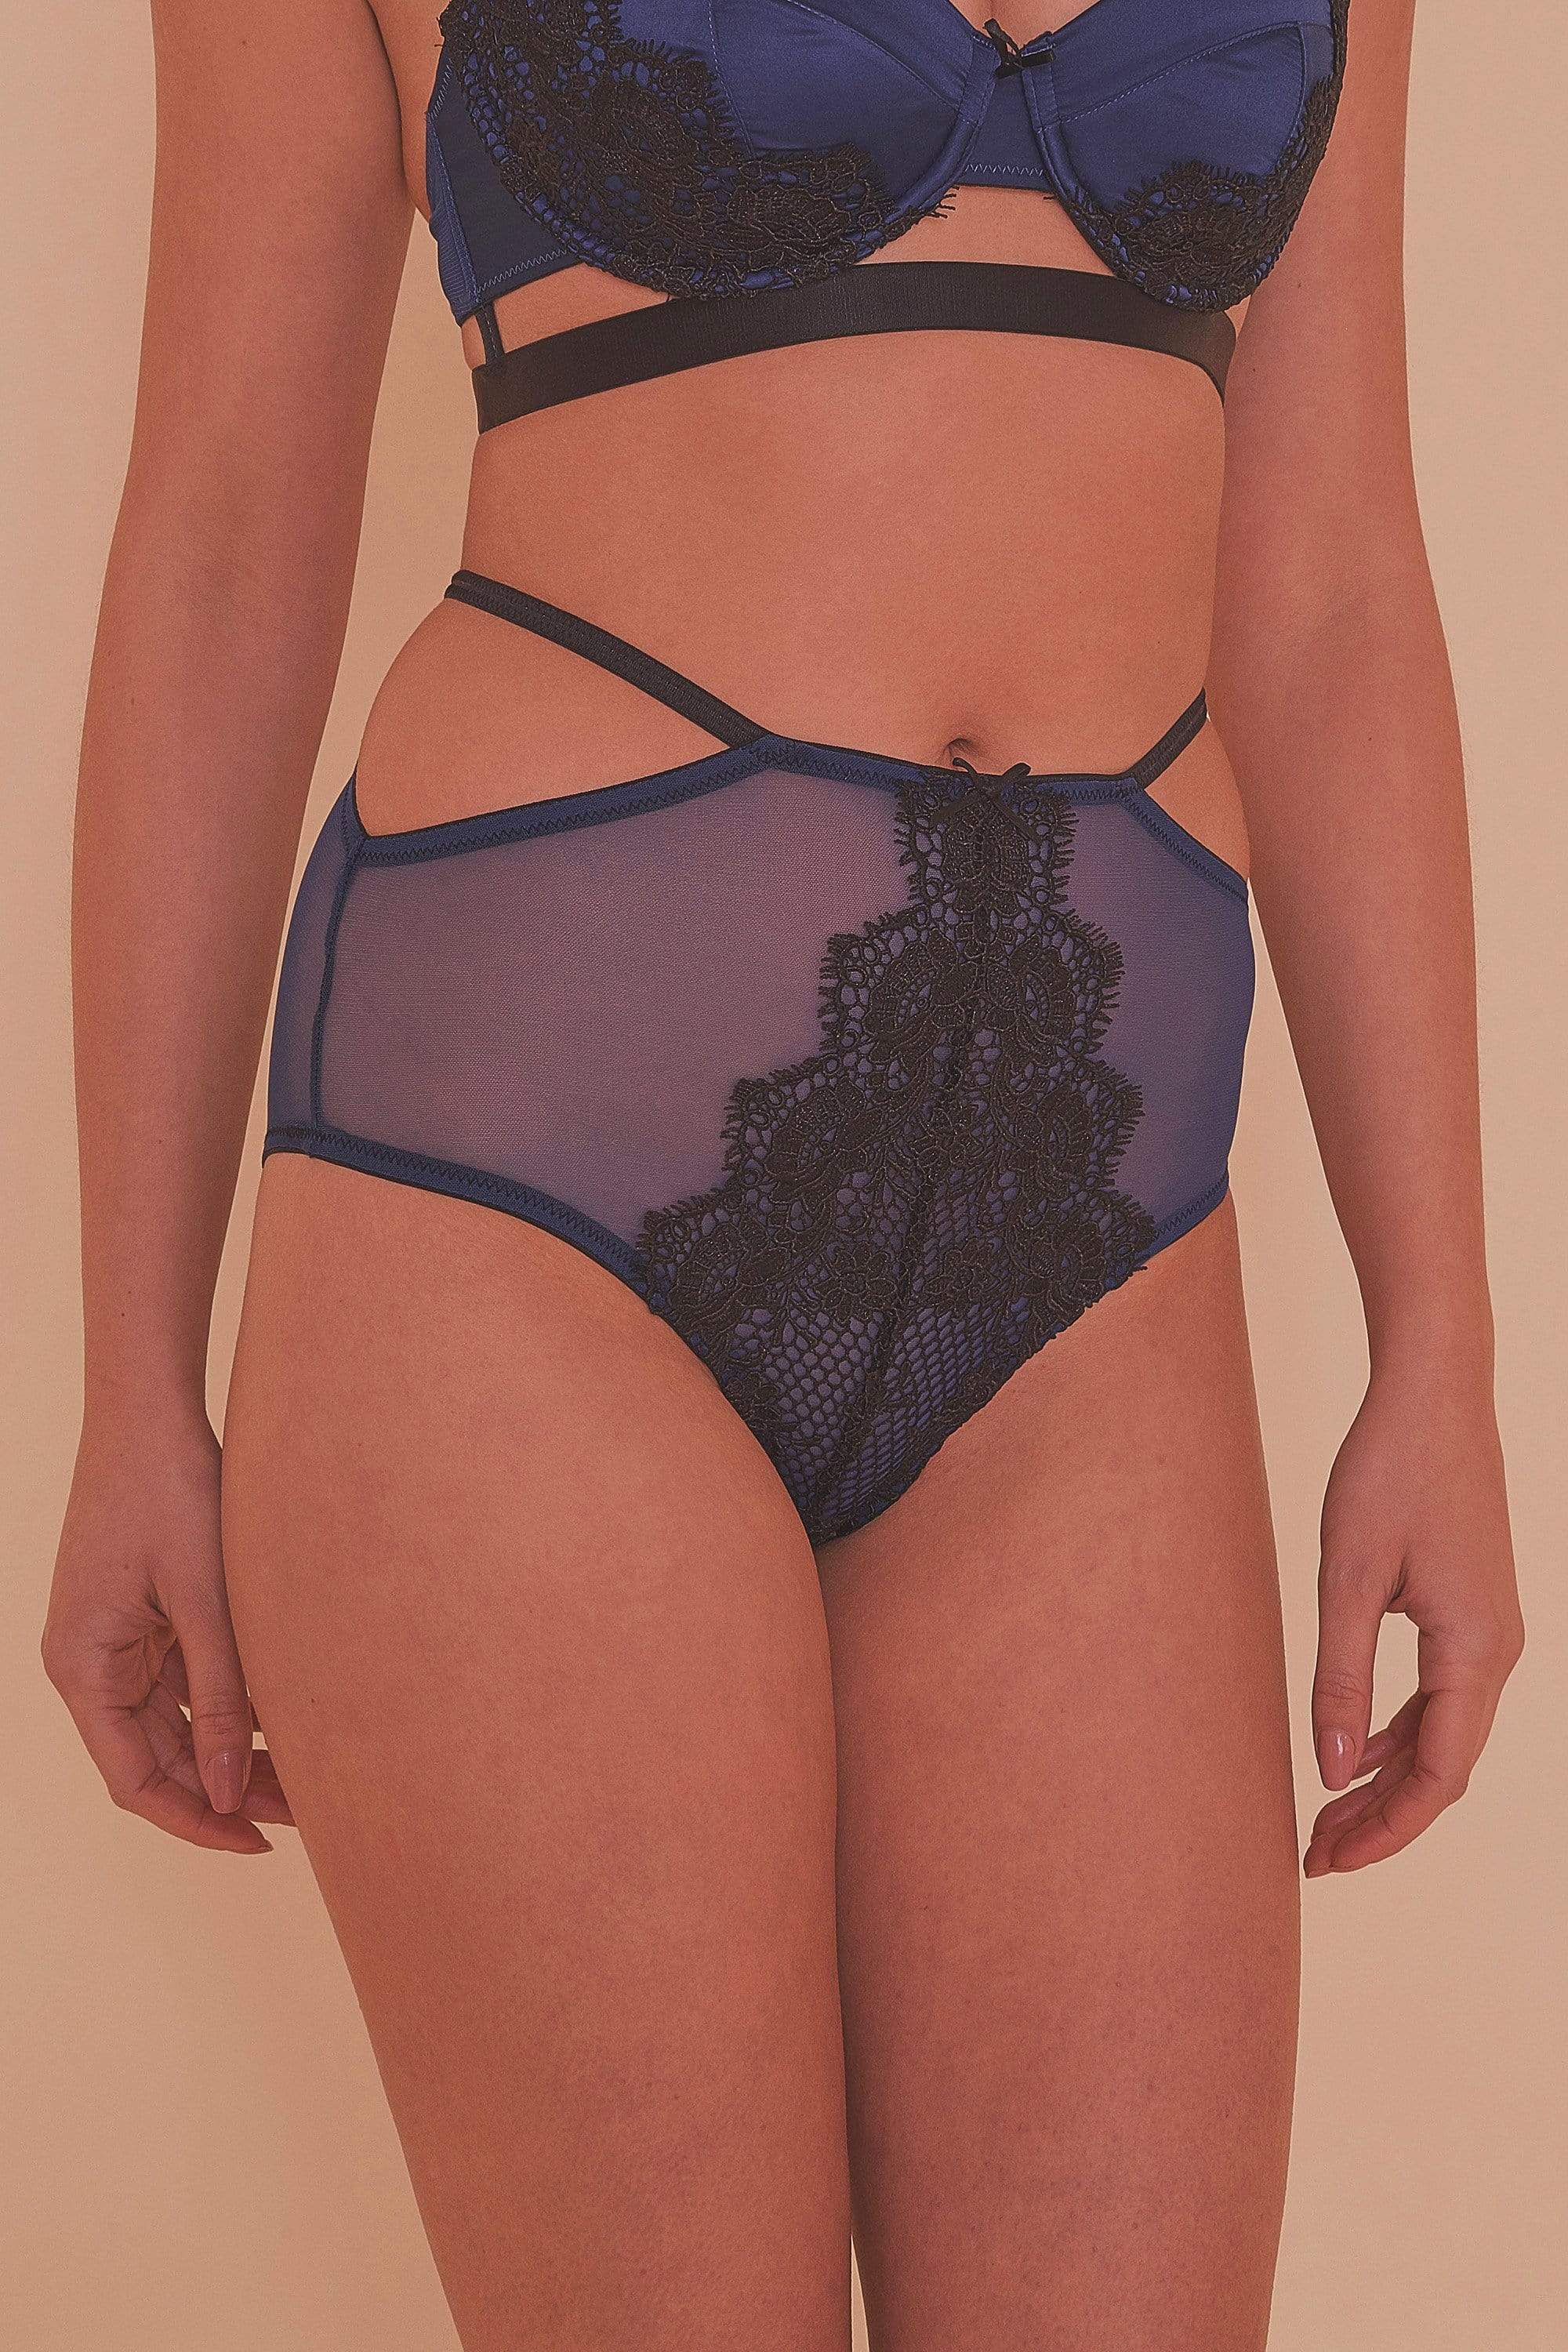 Tabitha Blue Embroidery high waist Brief